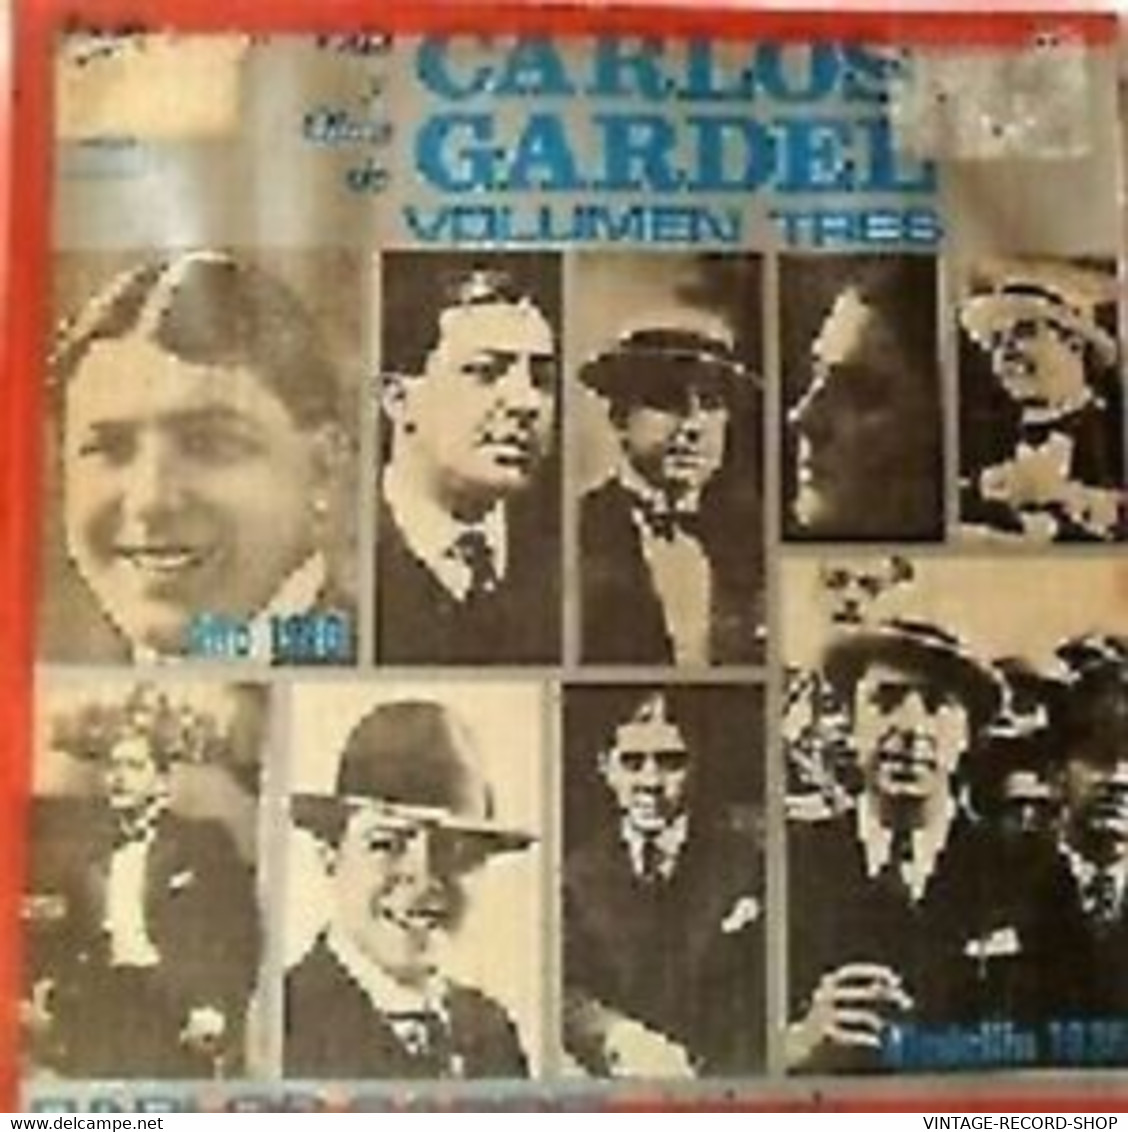 CARLOS GARDEL-VIDA Y OBRA 1918 VG++ RELEASED DATE: 1972 COUNTRY MANUFACTURED- - DVD Musicaux